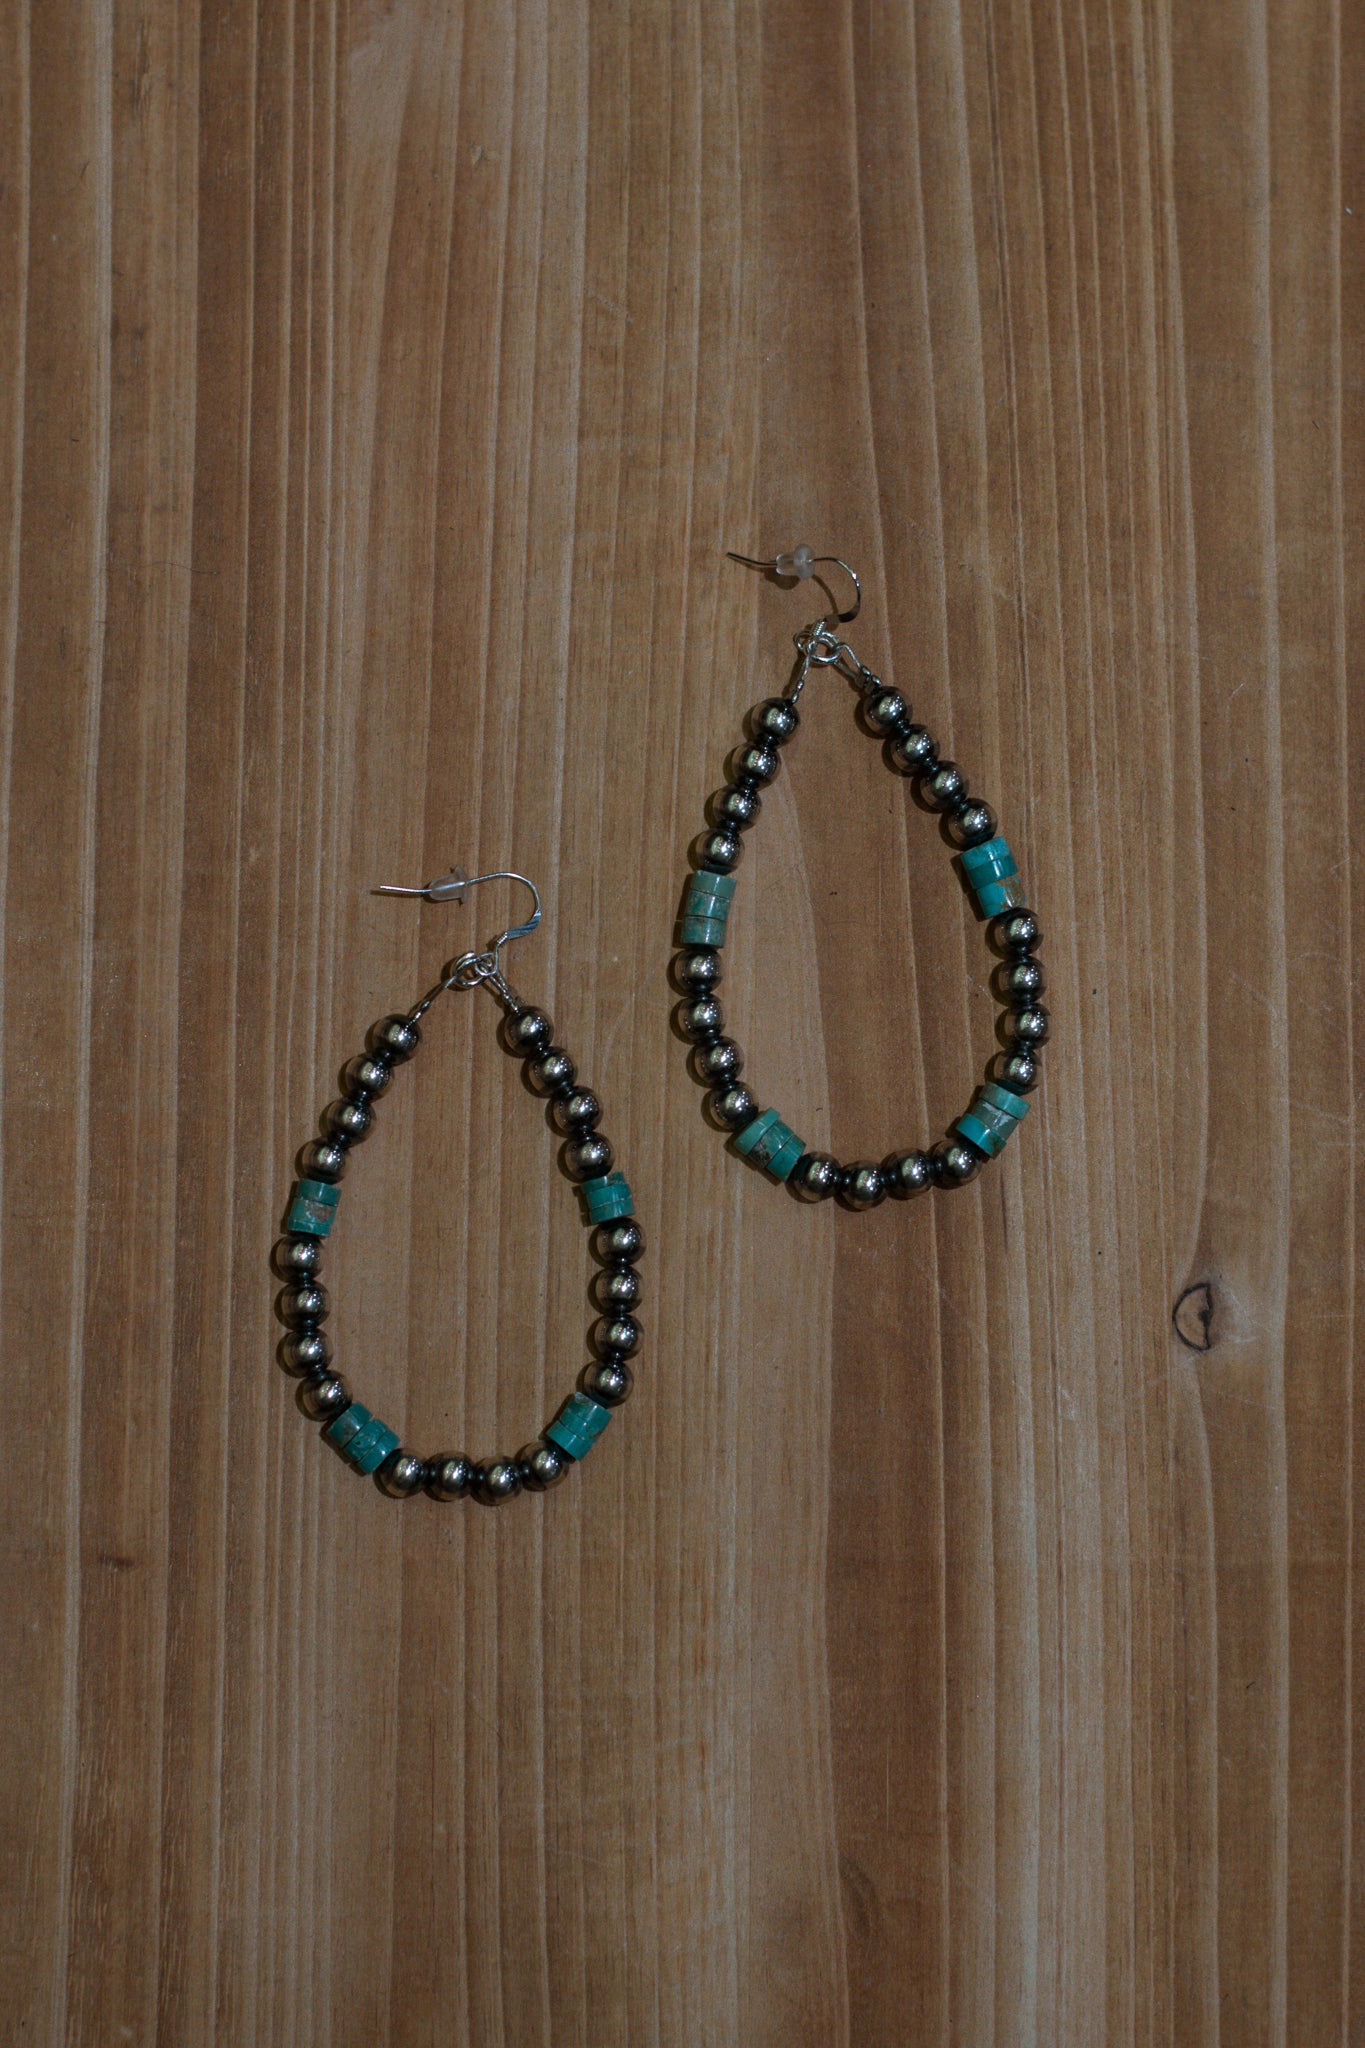 Genuine Turquoise Teardrop Earrings with Navajo Pearls